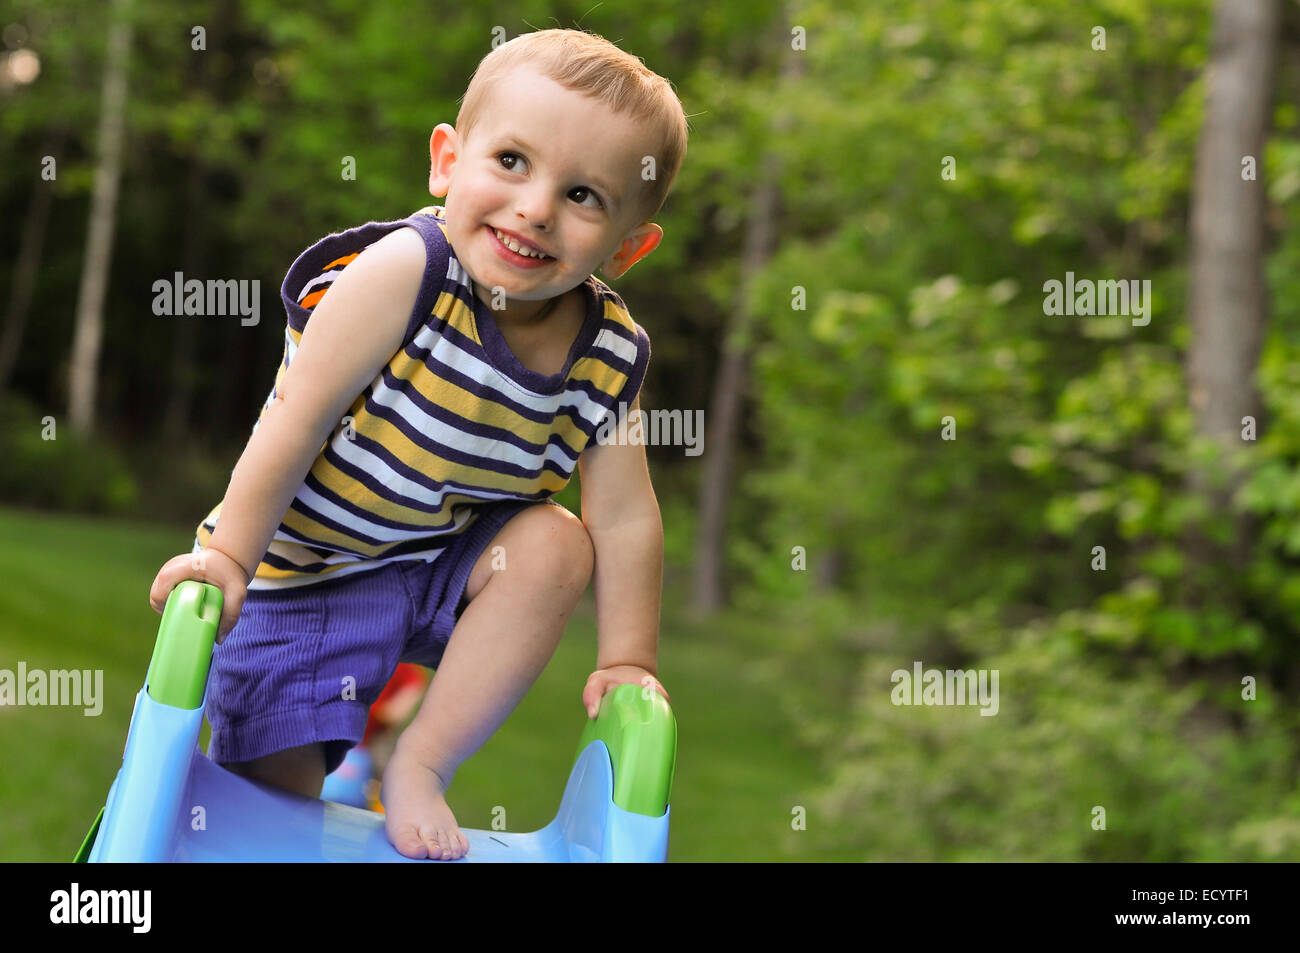 Un bébé garçon dans un débardeur rayé joue sur une glissière en plastique en été. Banque D'Images